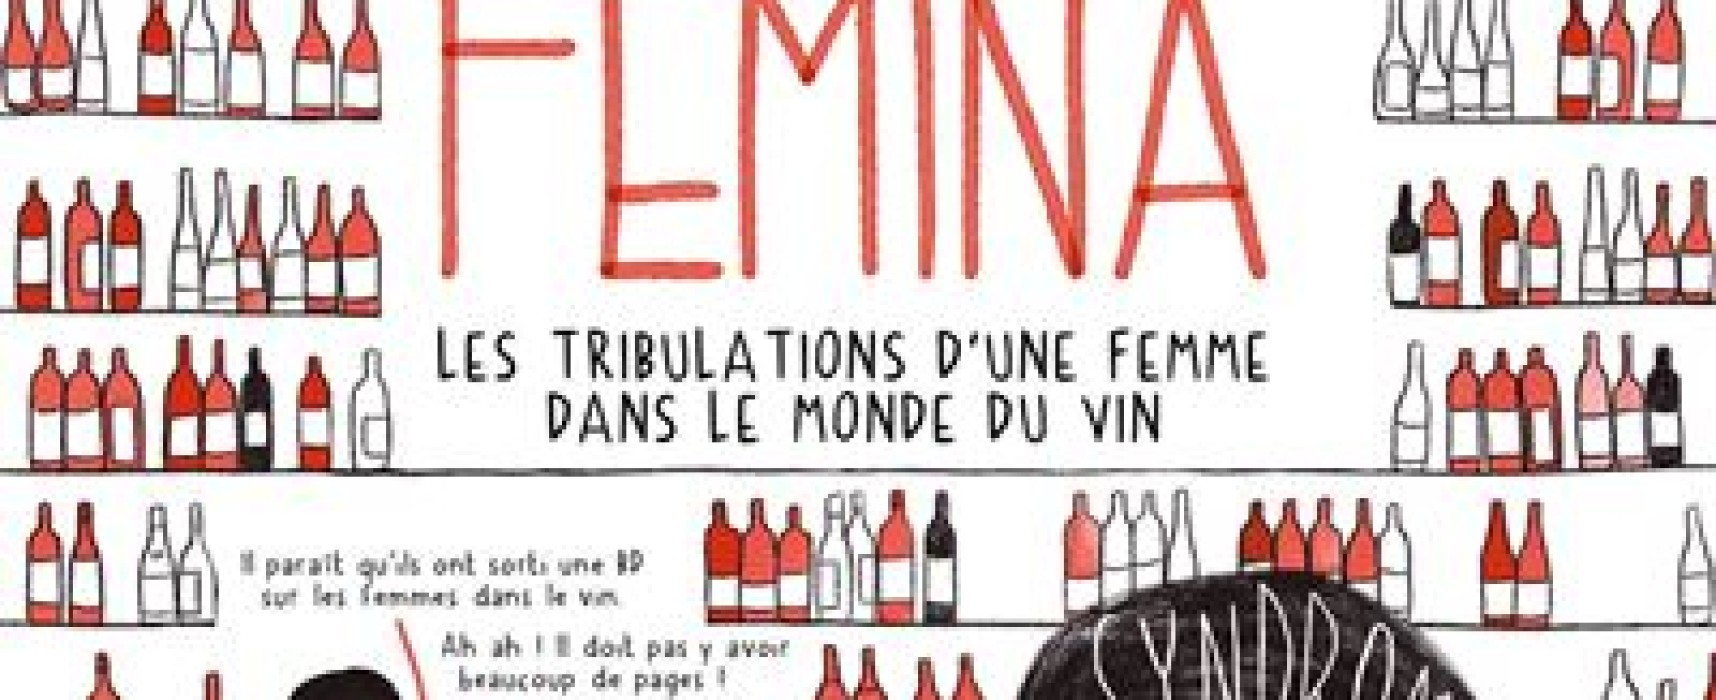 [Médiathèque] Rencontre autour du livre en présence de l’autrice « IN VIVO FEMINA, les tribulations d’une femme dans le monde du vin » – vendredi 17 février 2023 à 16h – Felletin